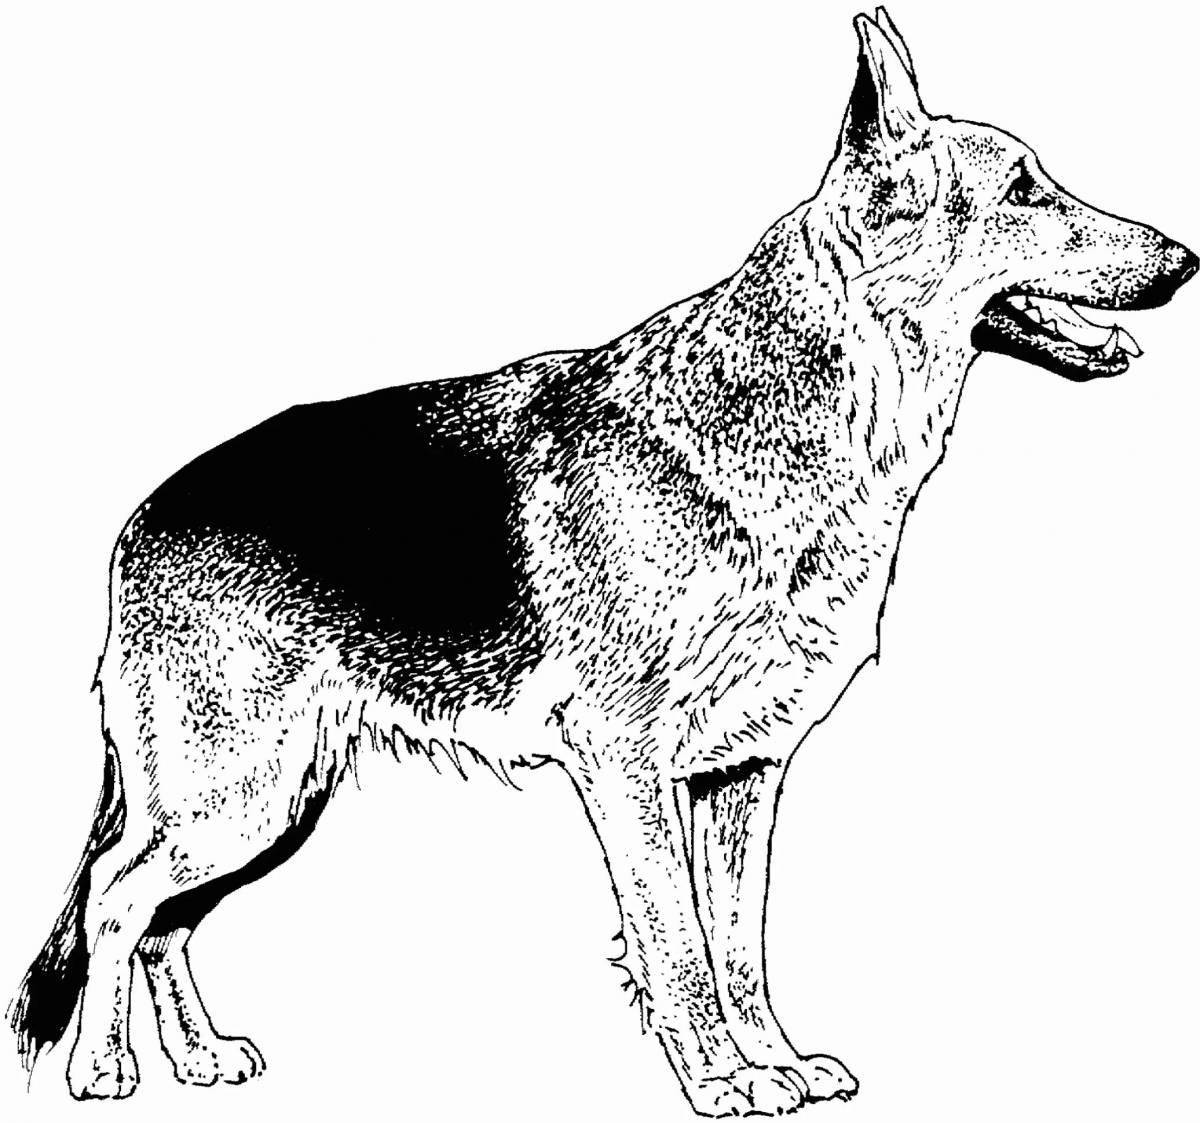 Shepherd dog #3